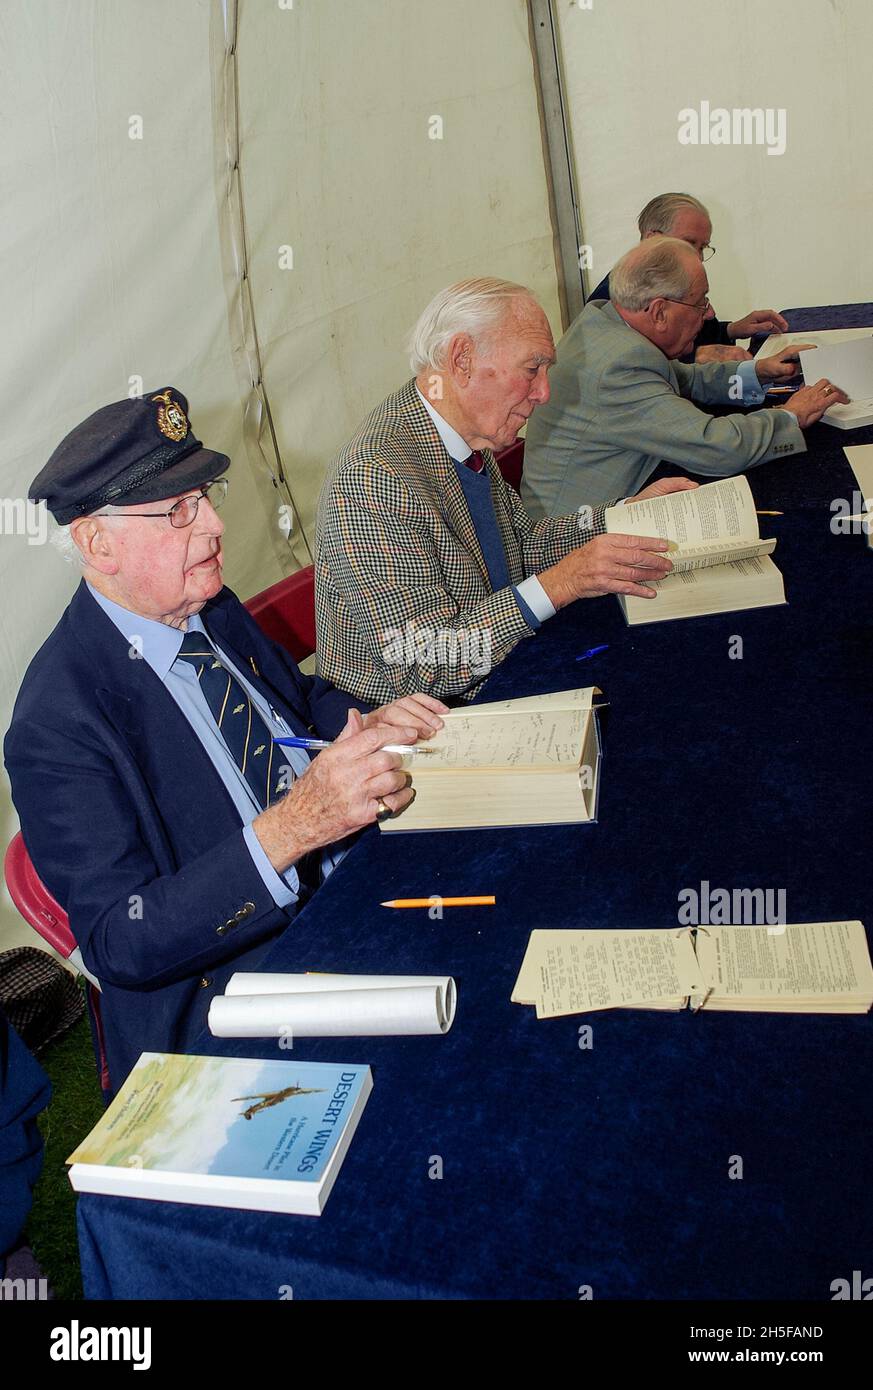 Piloti veterani della RAF in tempo di guerra ad un evento di firma del libro. Il pilota anziano della Royal Air Force Wartime firma i libri Foto Stock